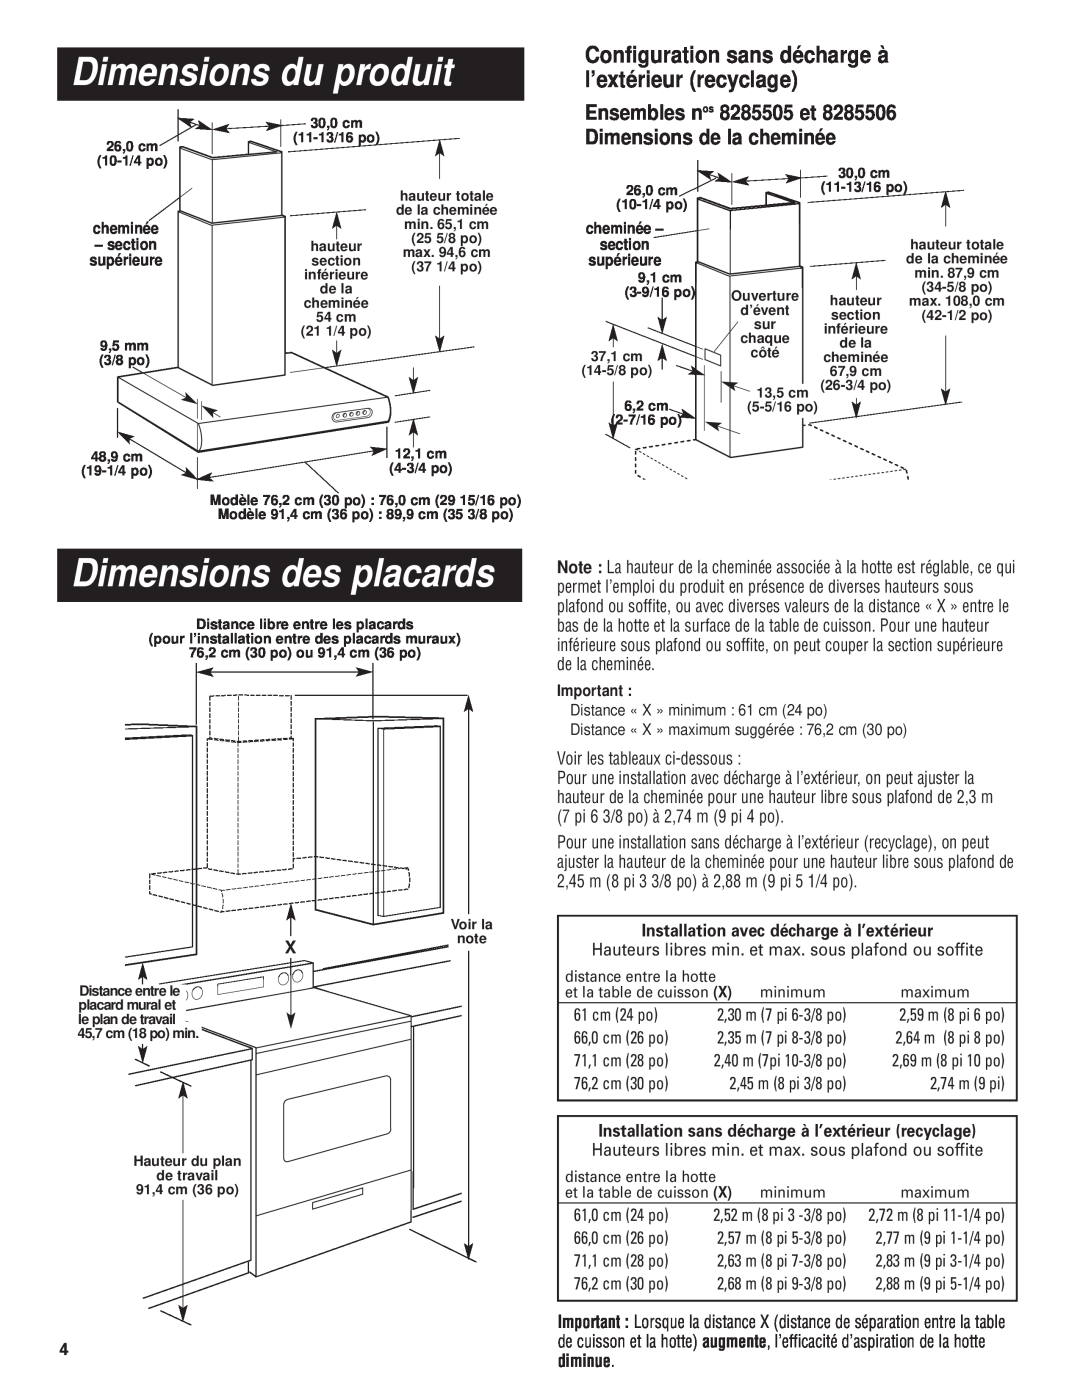 KitchenAid Pro Line Series Dimensions du produit, Dimensions des placards, Installation avec décharge à l’extérieur 